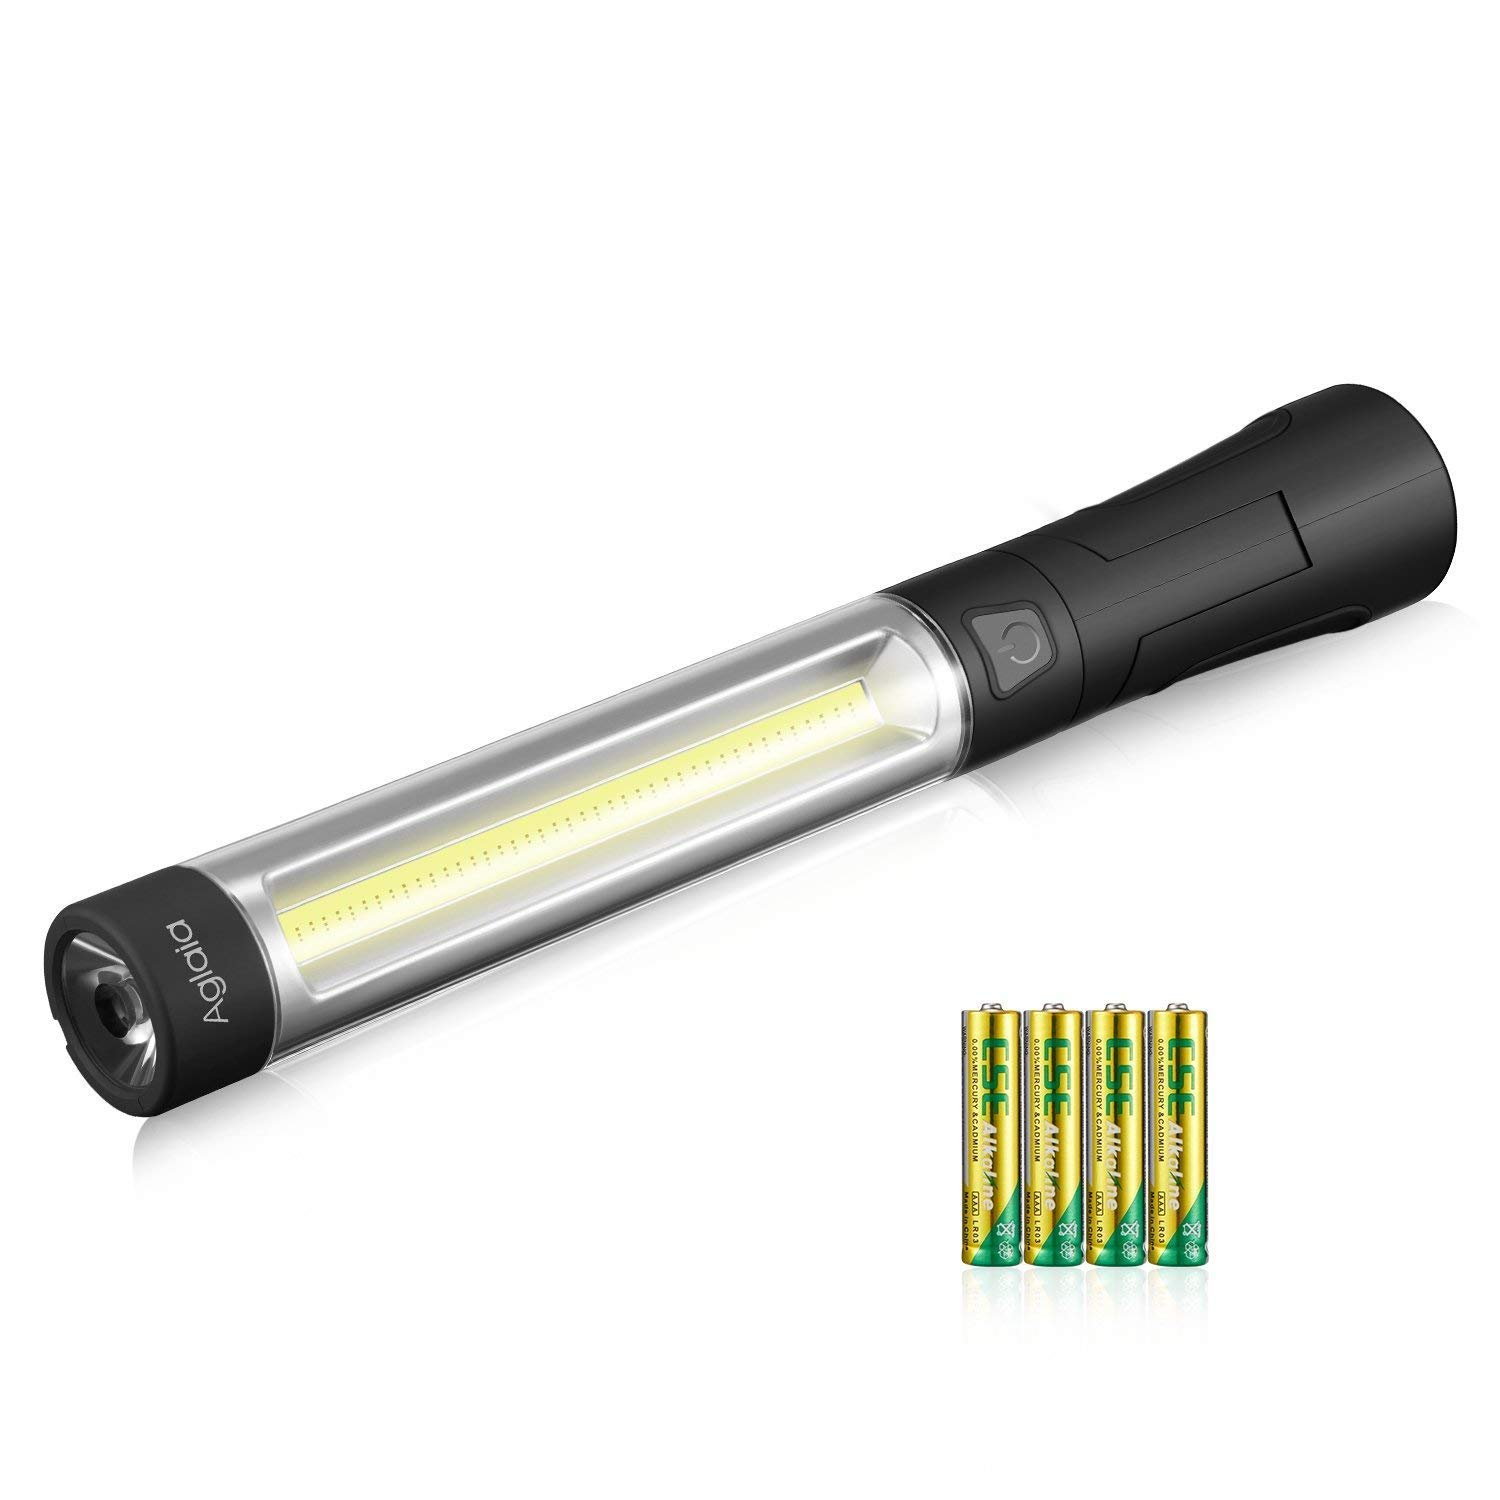 Linterna Táctica Súper Brillante, con 4 Baterías AAA, Impermeable IP65, 3 Modos de Luz